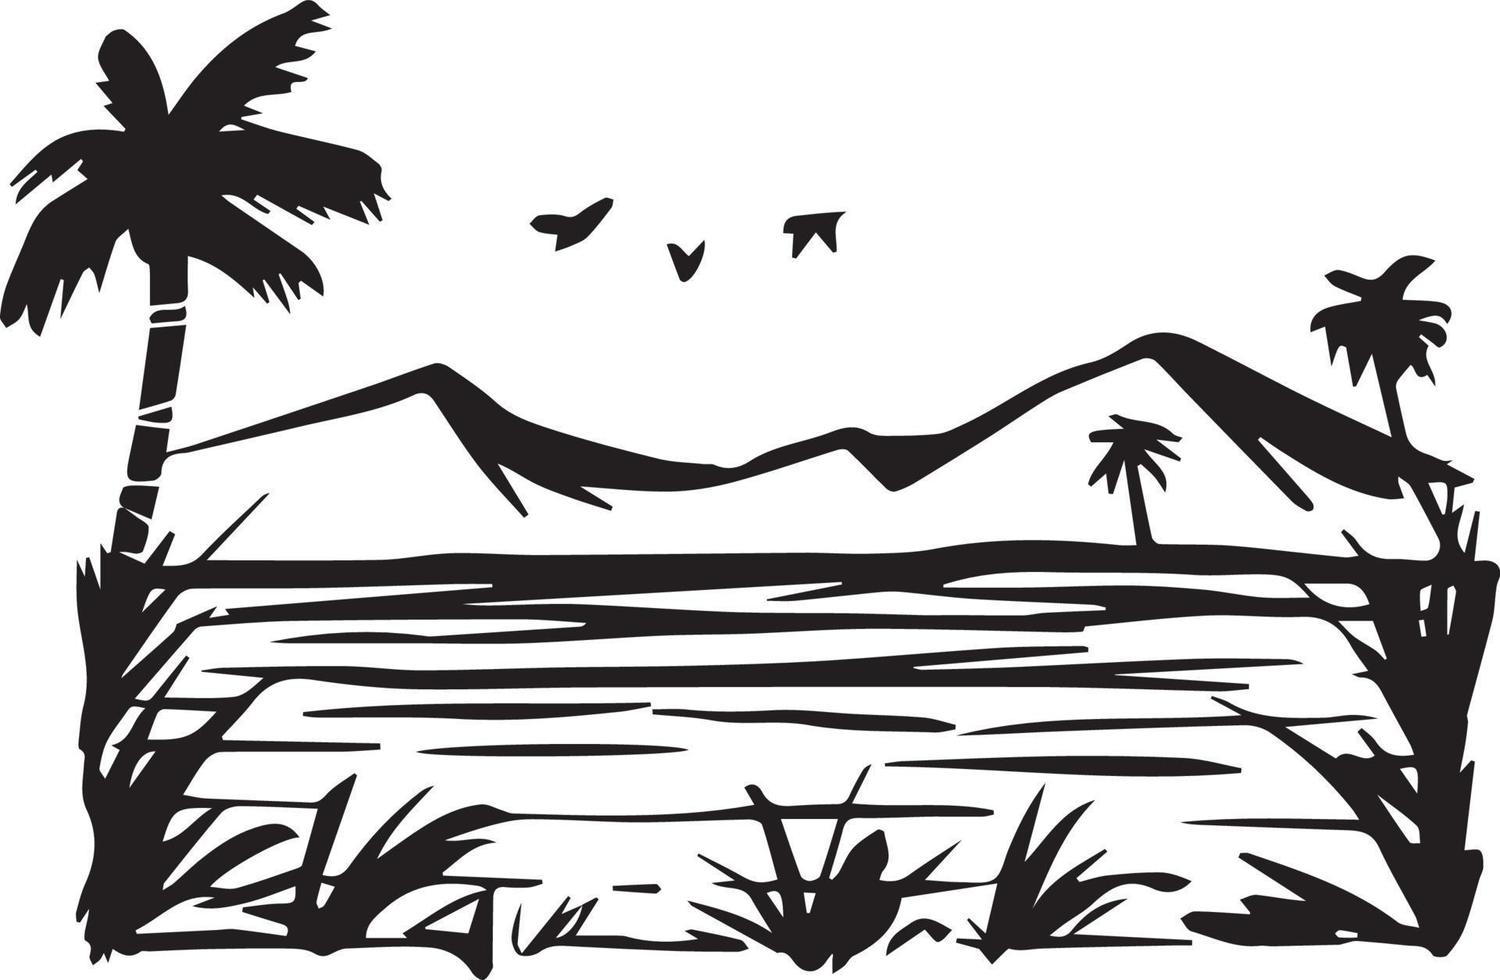 dessin au trait noir et blanc un paysage fluvial avec beaucoup d'arbres, de montagnes et quelques oiseaux volants vecteur